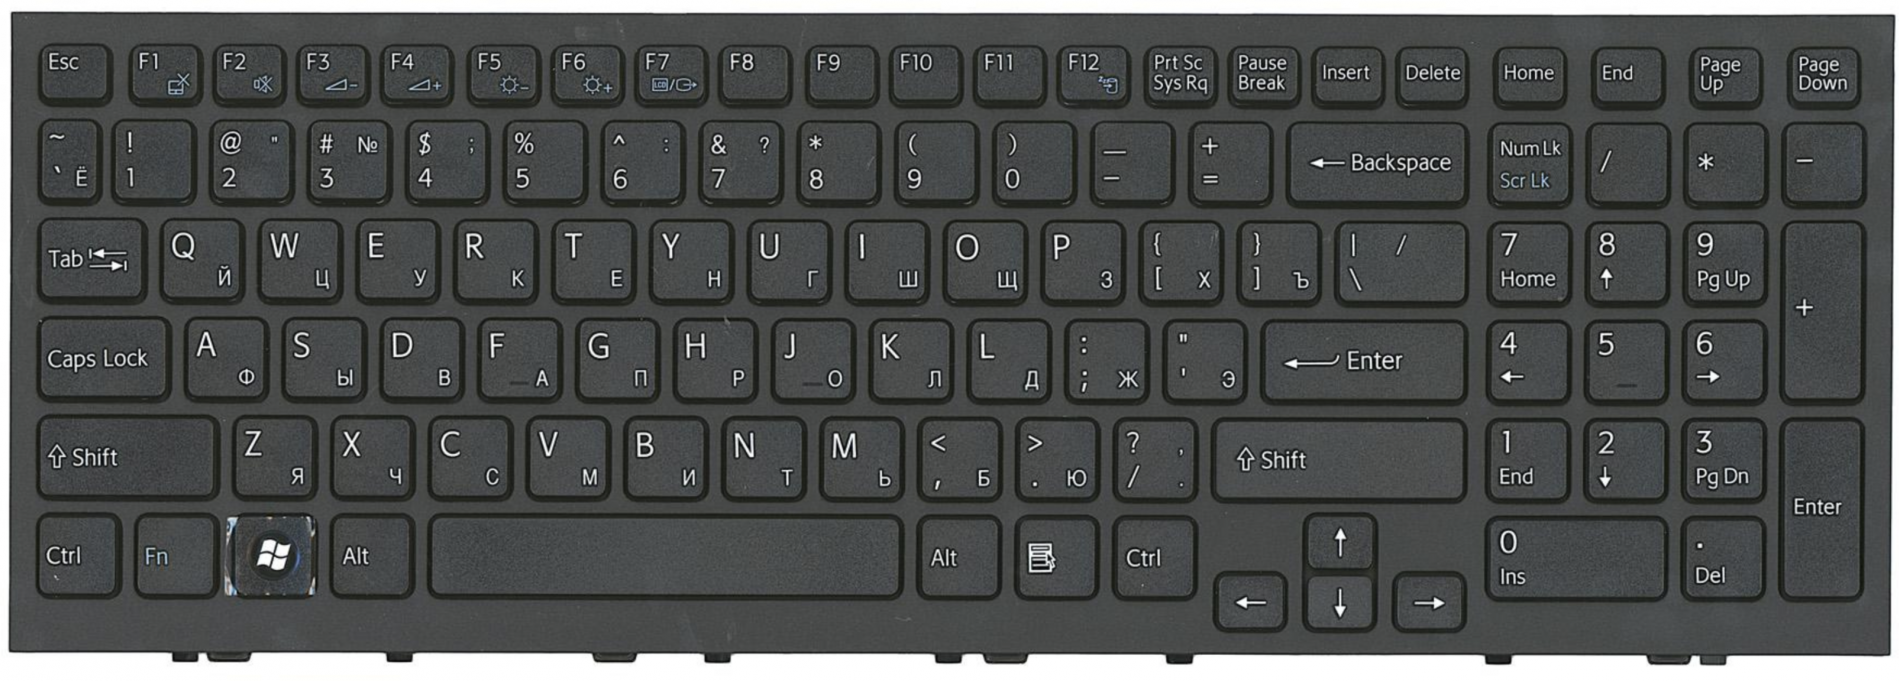 Клавиатура для ноутбука Sony Vaio pcg-71812v черная с рамкой